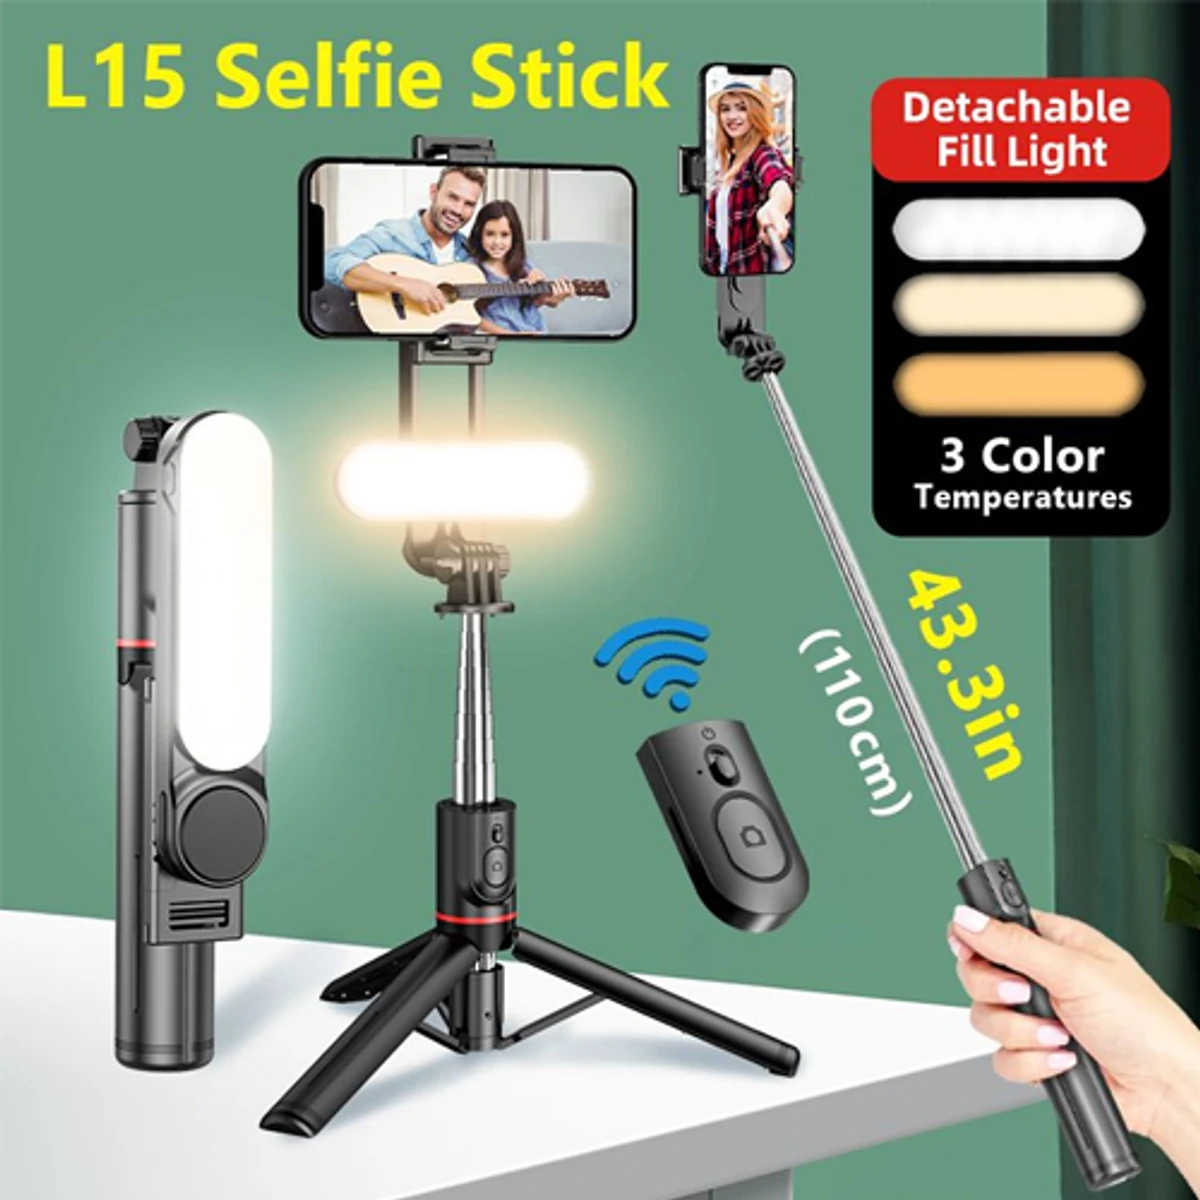 L15 Selfie Stick Tripod With Detachable LED Light